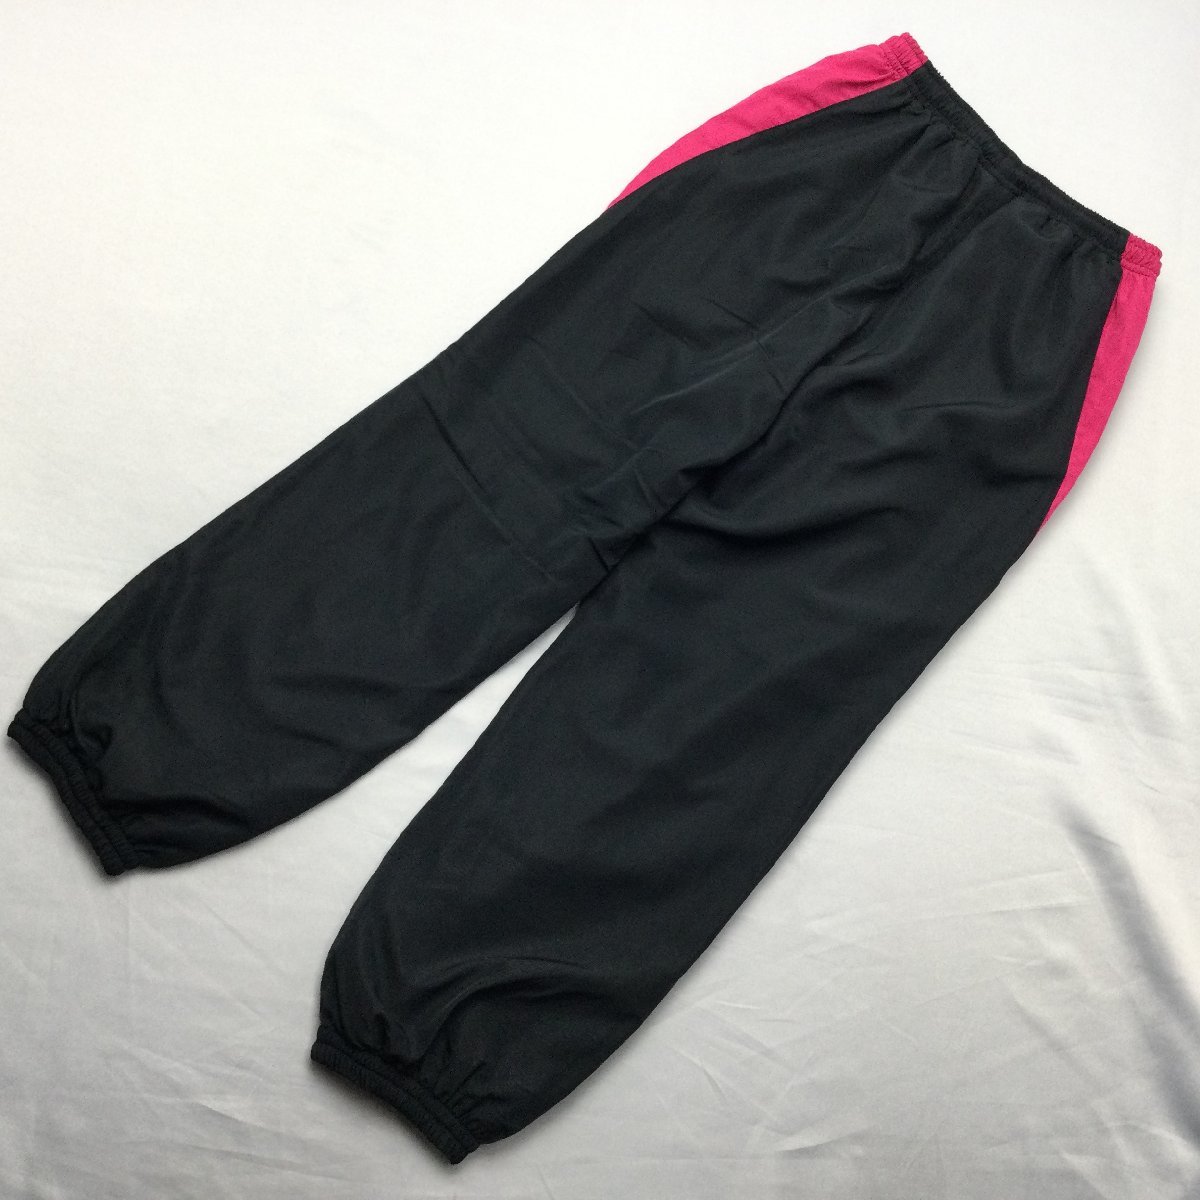 [ бесплатная доставка ][ новый товар ]Kaepa женский брейкер брюки ( с изнанки флис водоотталкивающая отделка UV cut кромка резина ) M черный * пурпурный *473534